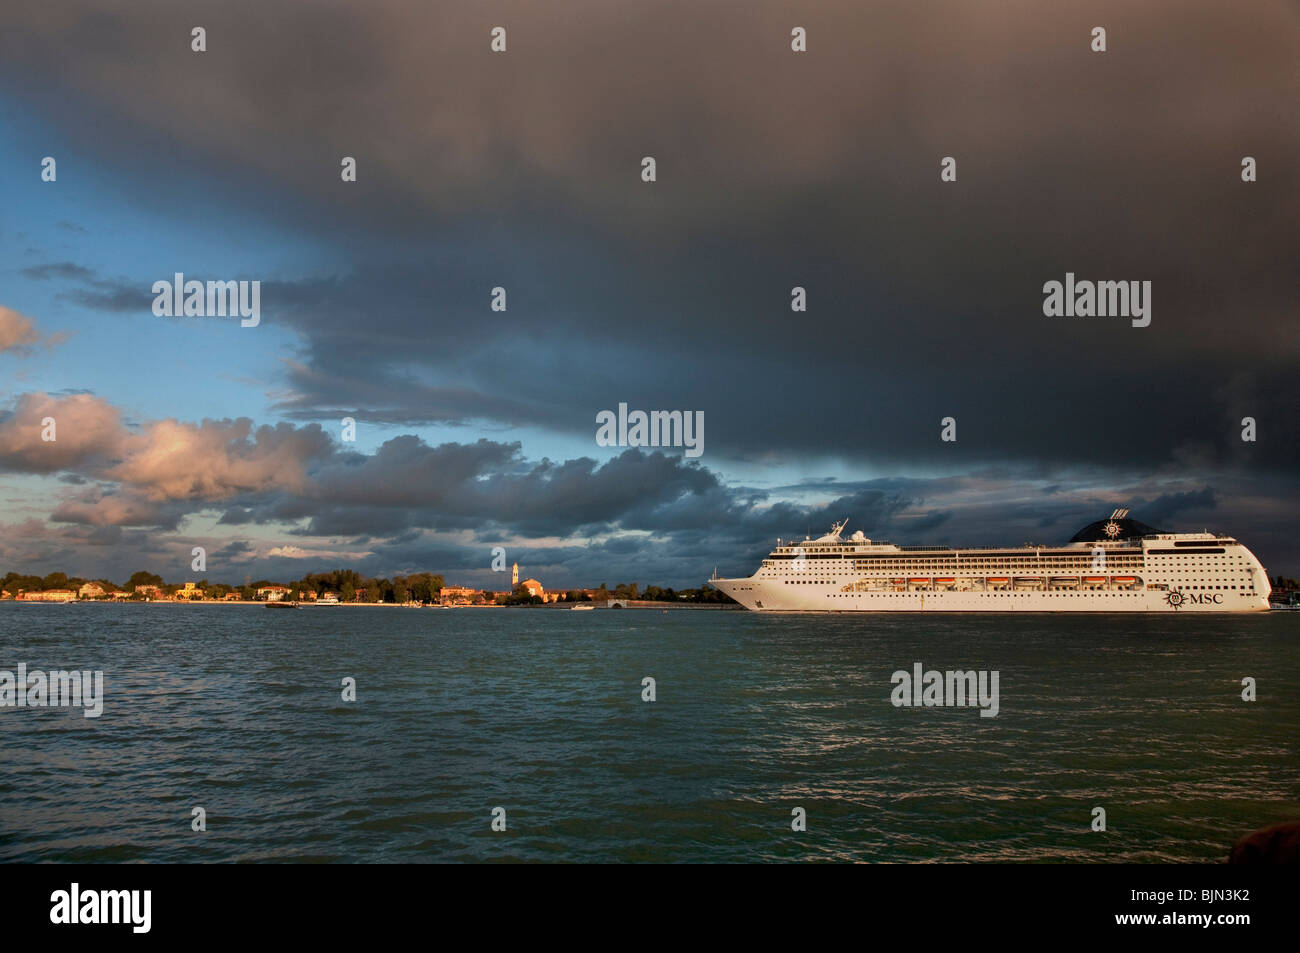 Venice Lido and MSC Opera cruise ship, Veneto, Italy. Stock Photo